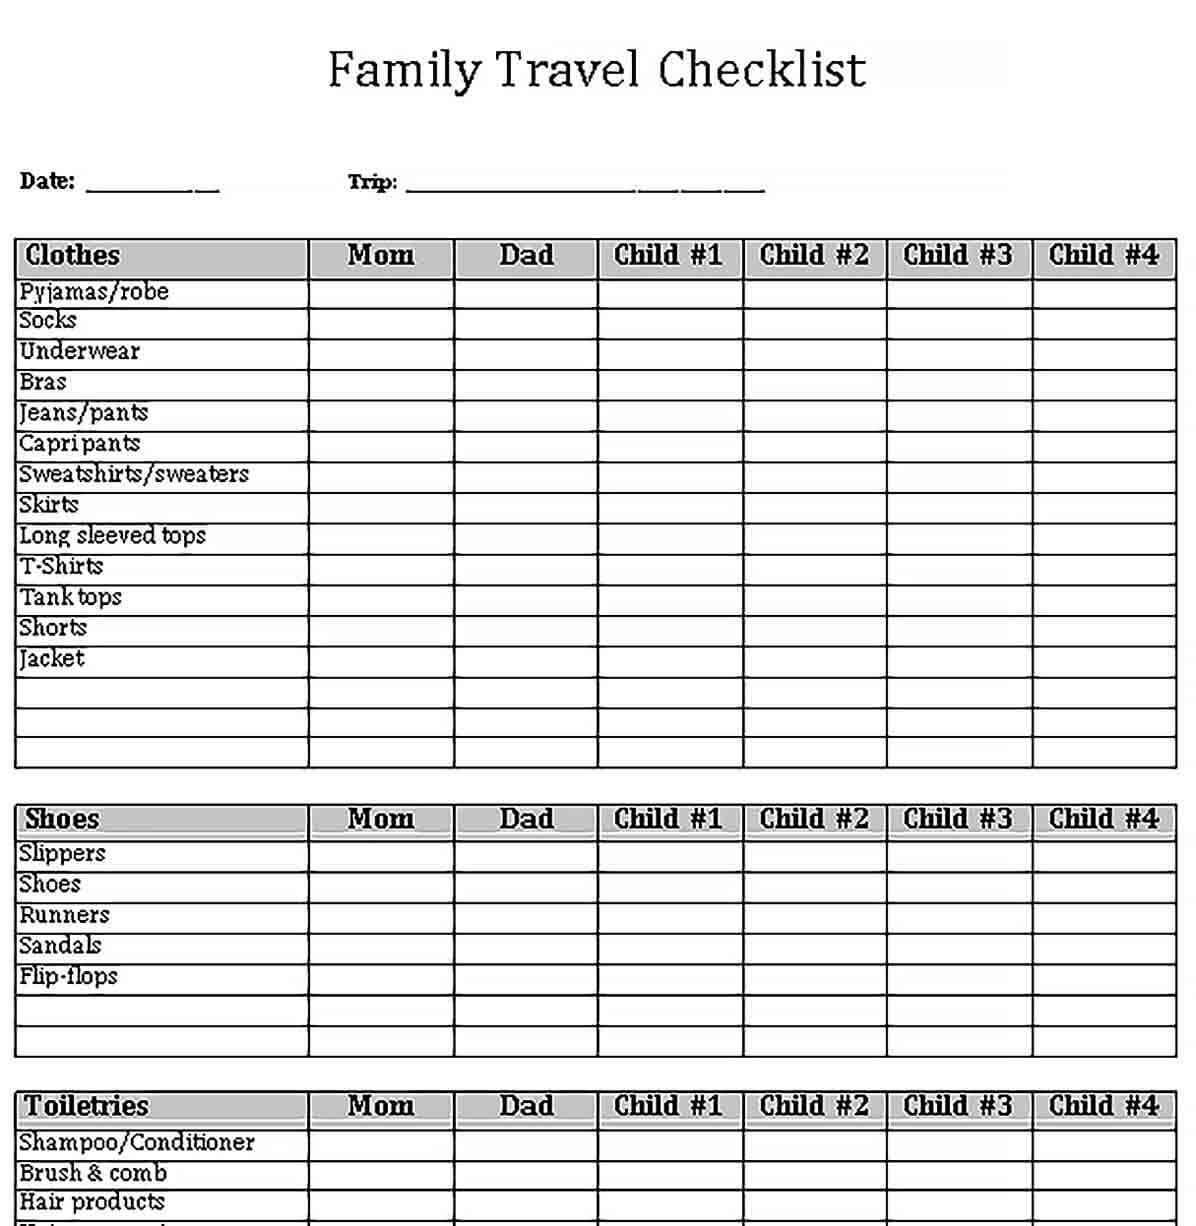 Sample Travel Checklist for Family